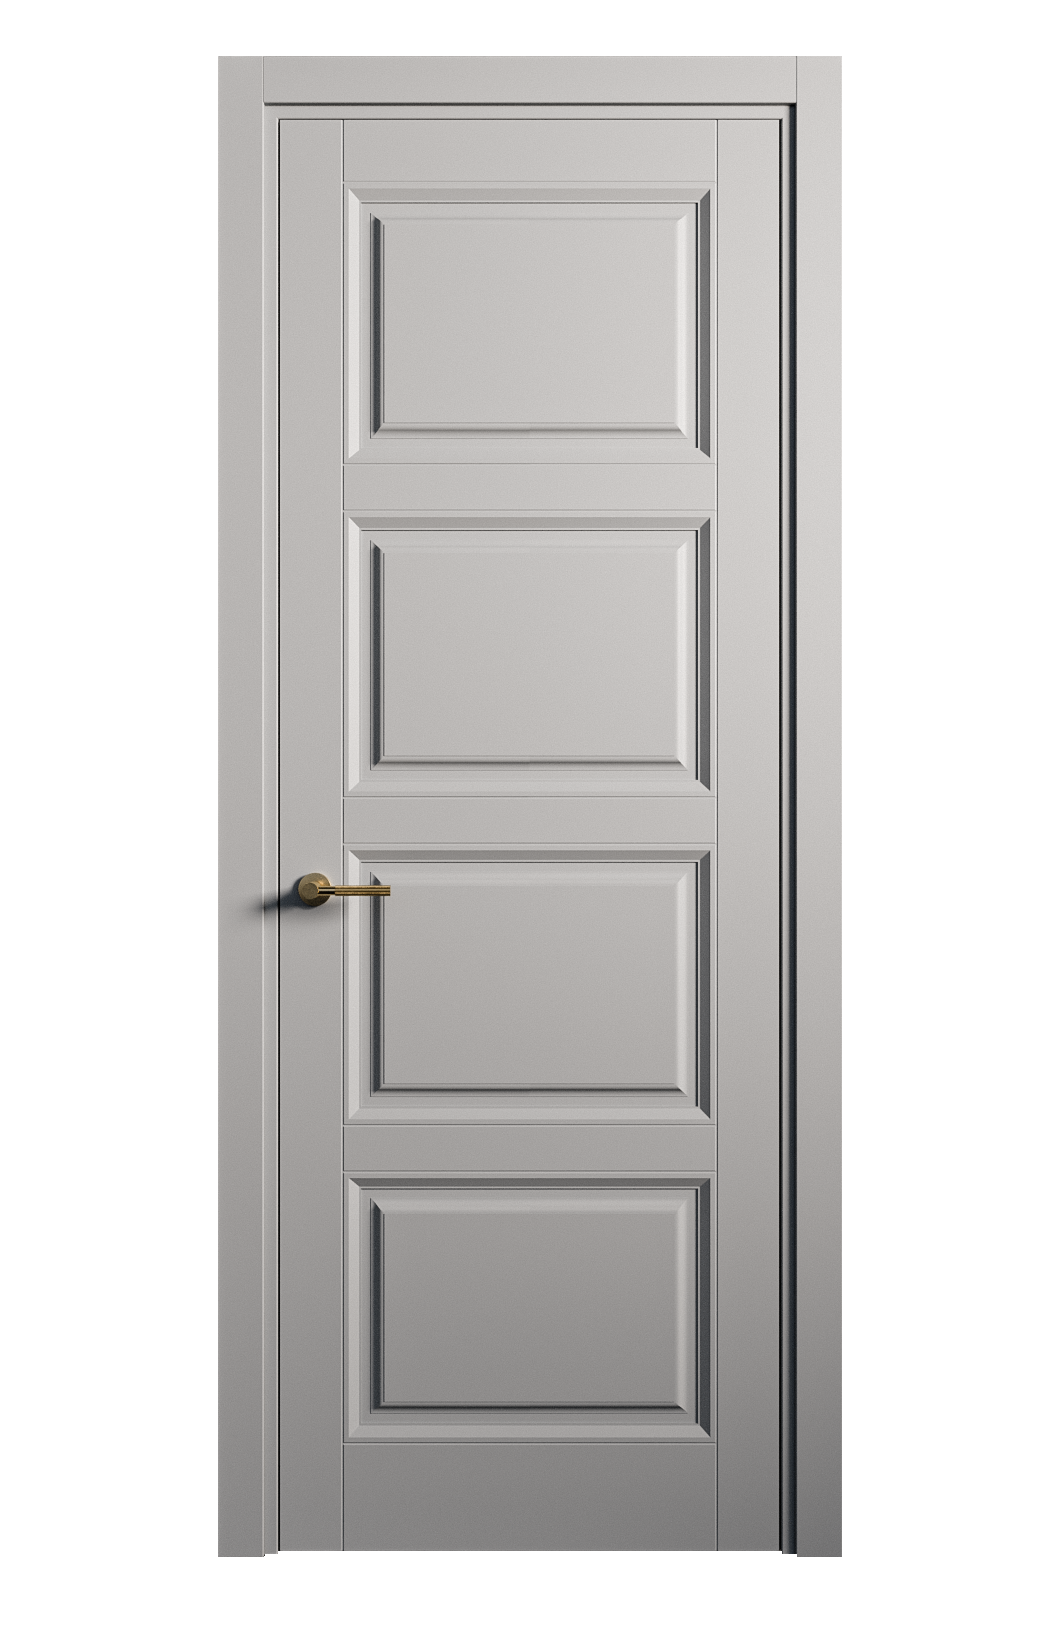 Межкомнатная дверь Venezia-4 глухая эмаль ral 7040 25812